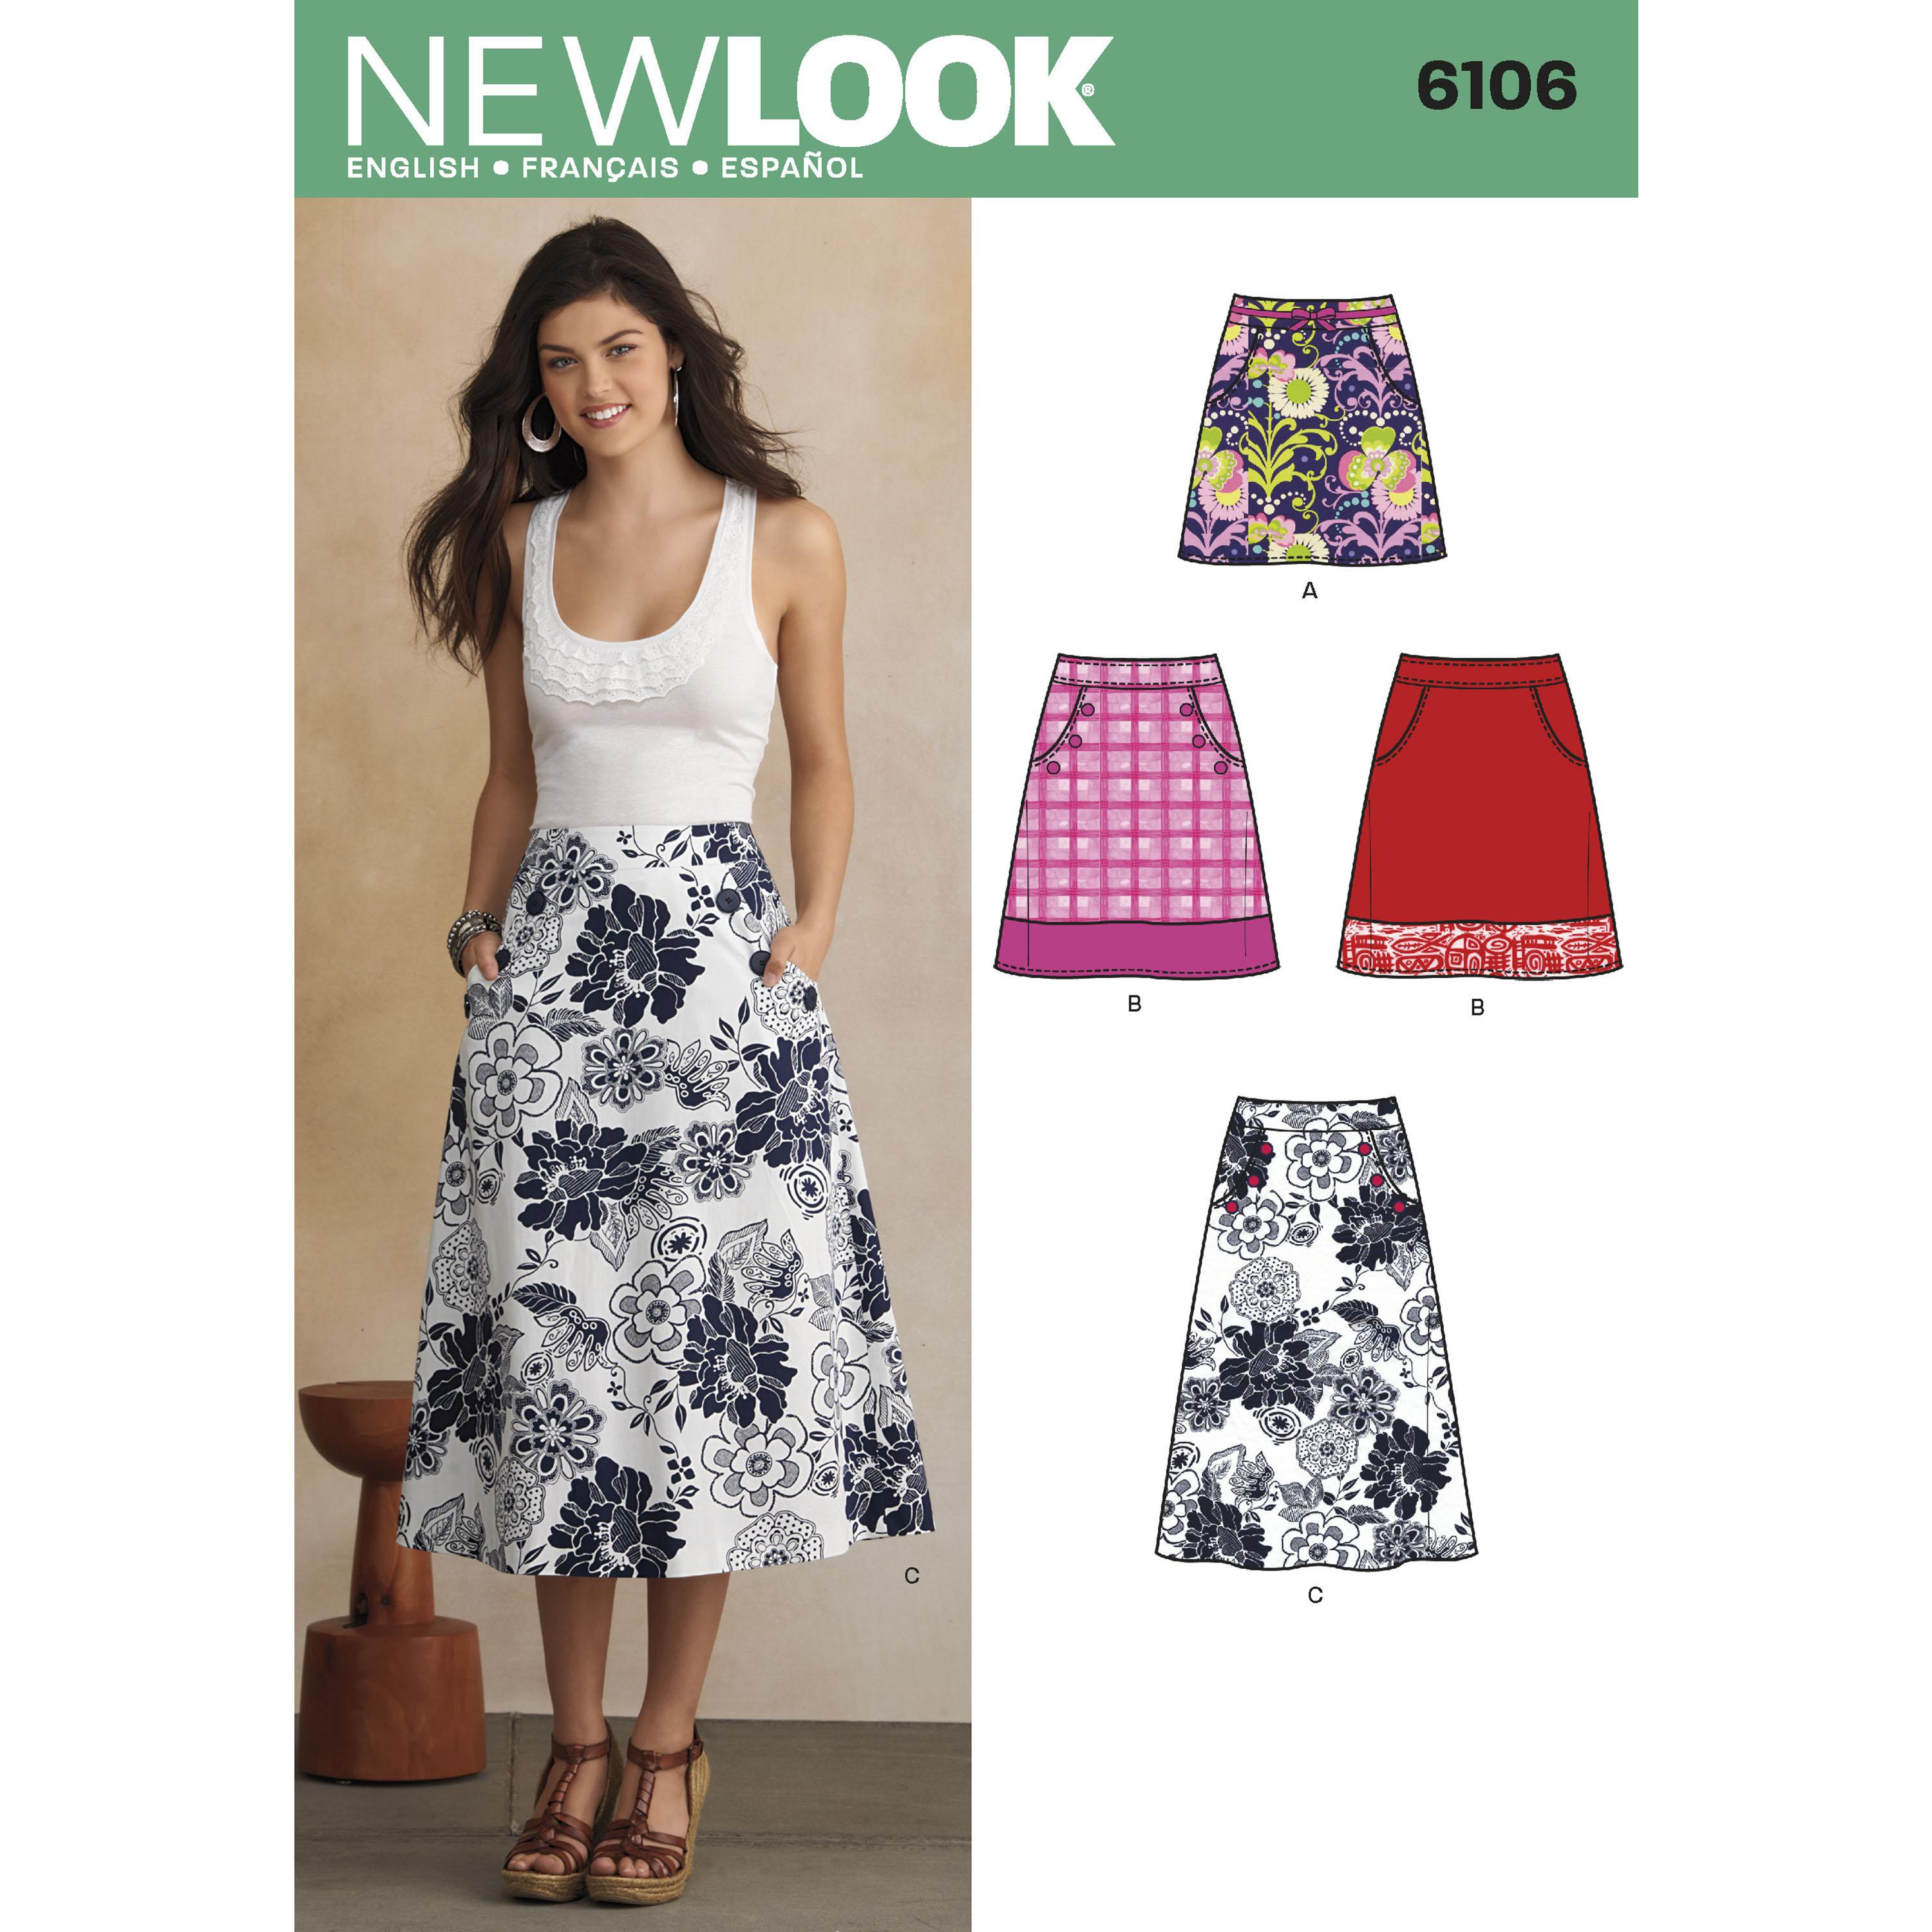 NewLook N6106 Misses' Skirts